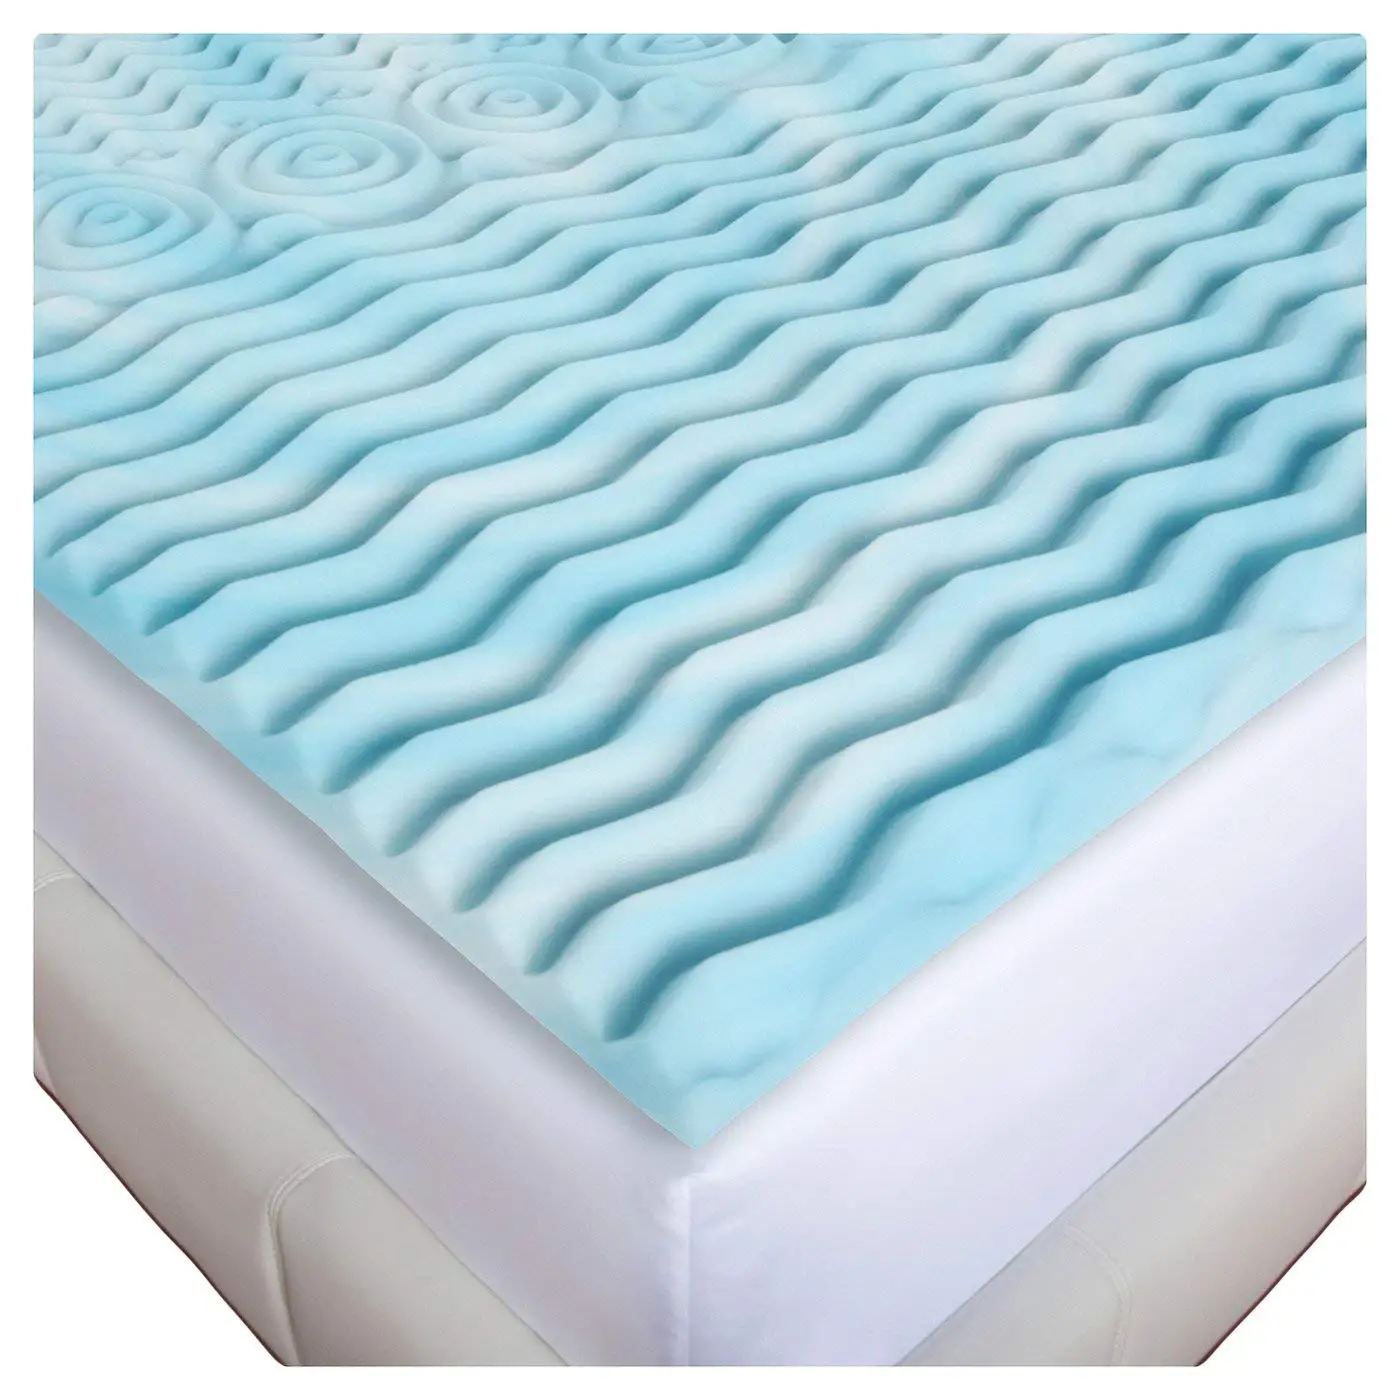 rv cot mattress